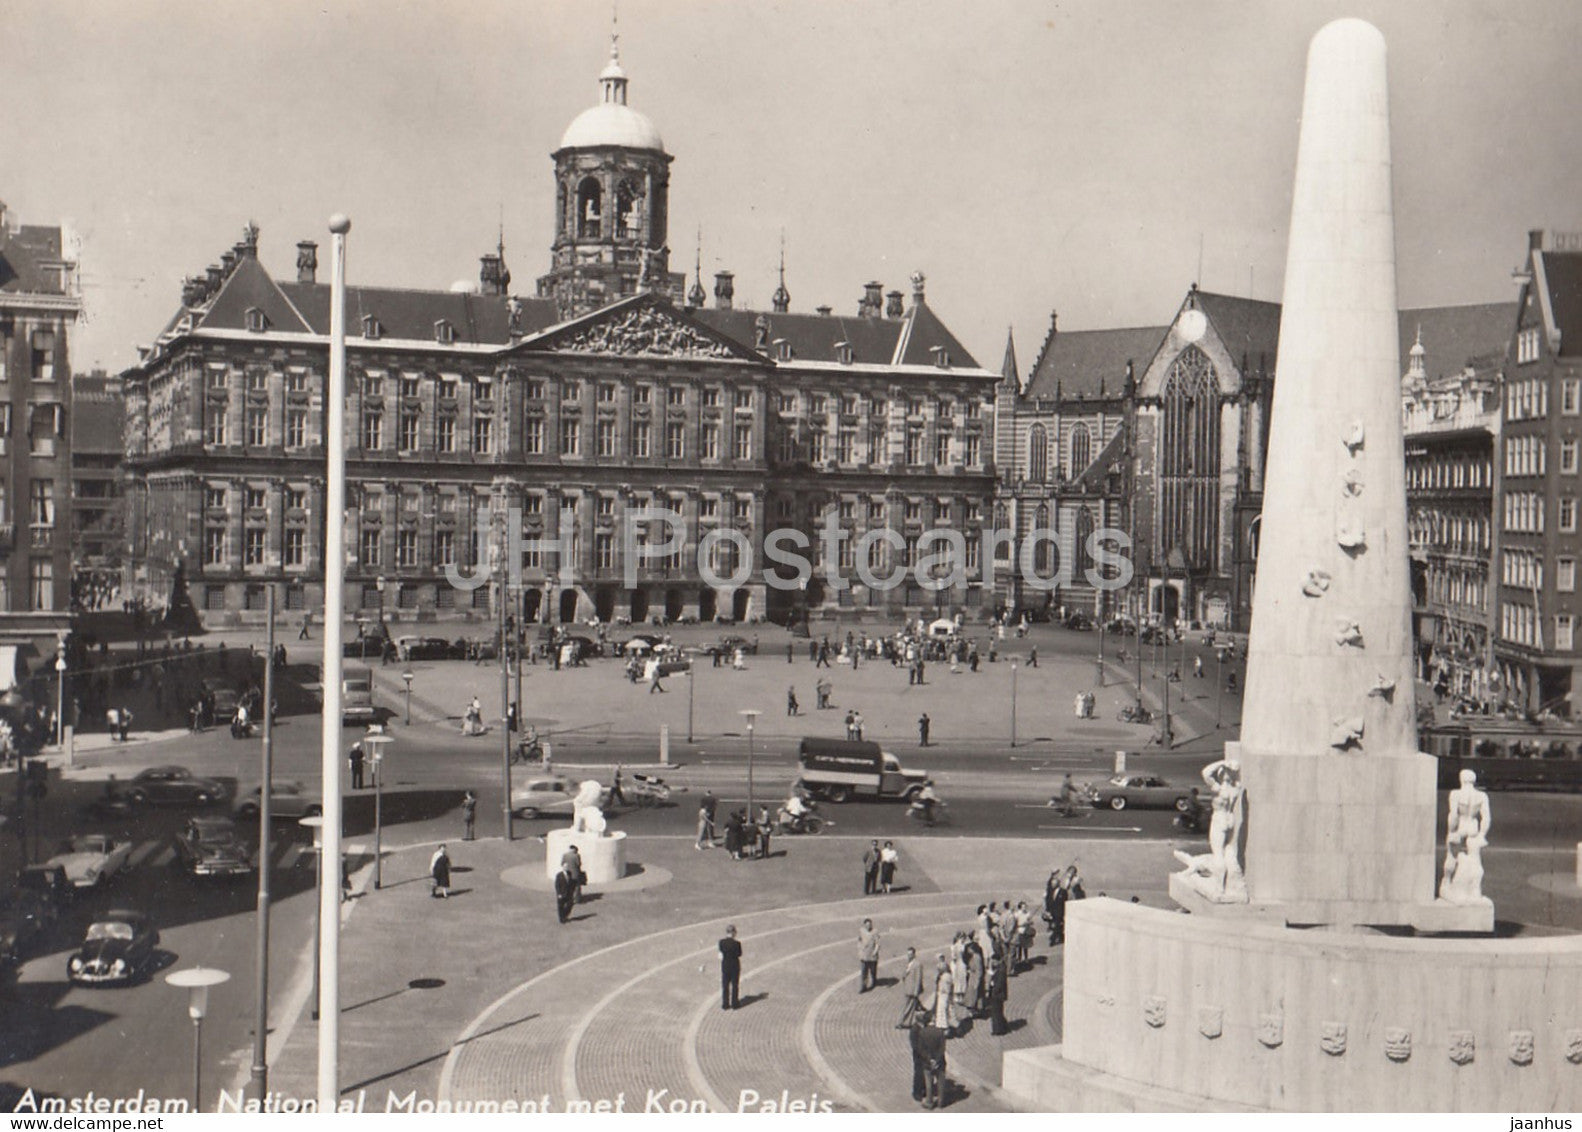 Amsterdam - Dam - Kon Paleis en Nat Monument - car - old postcard - 1958 - Netherlands - used - JH Postcards